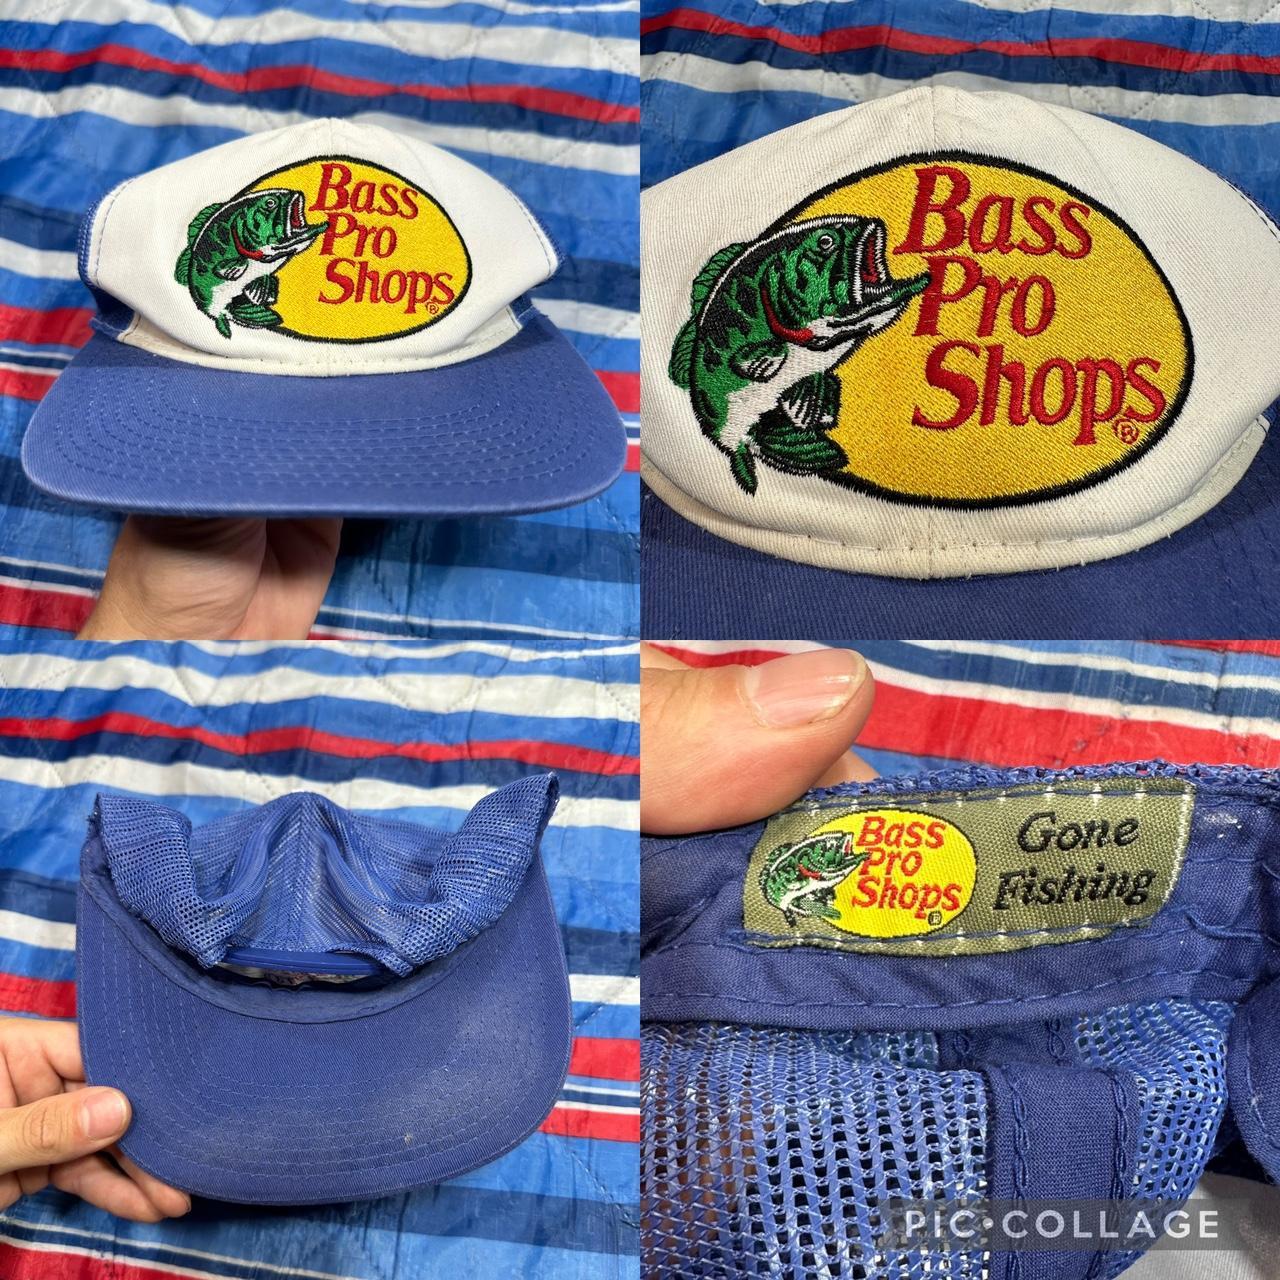 Bass Pro Shops Men's Caps - Blue